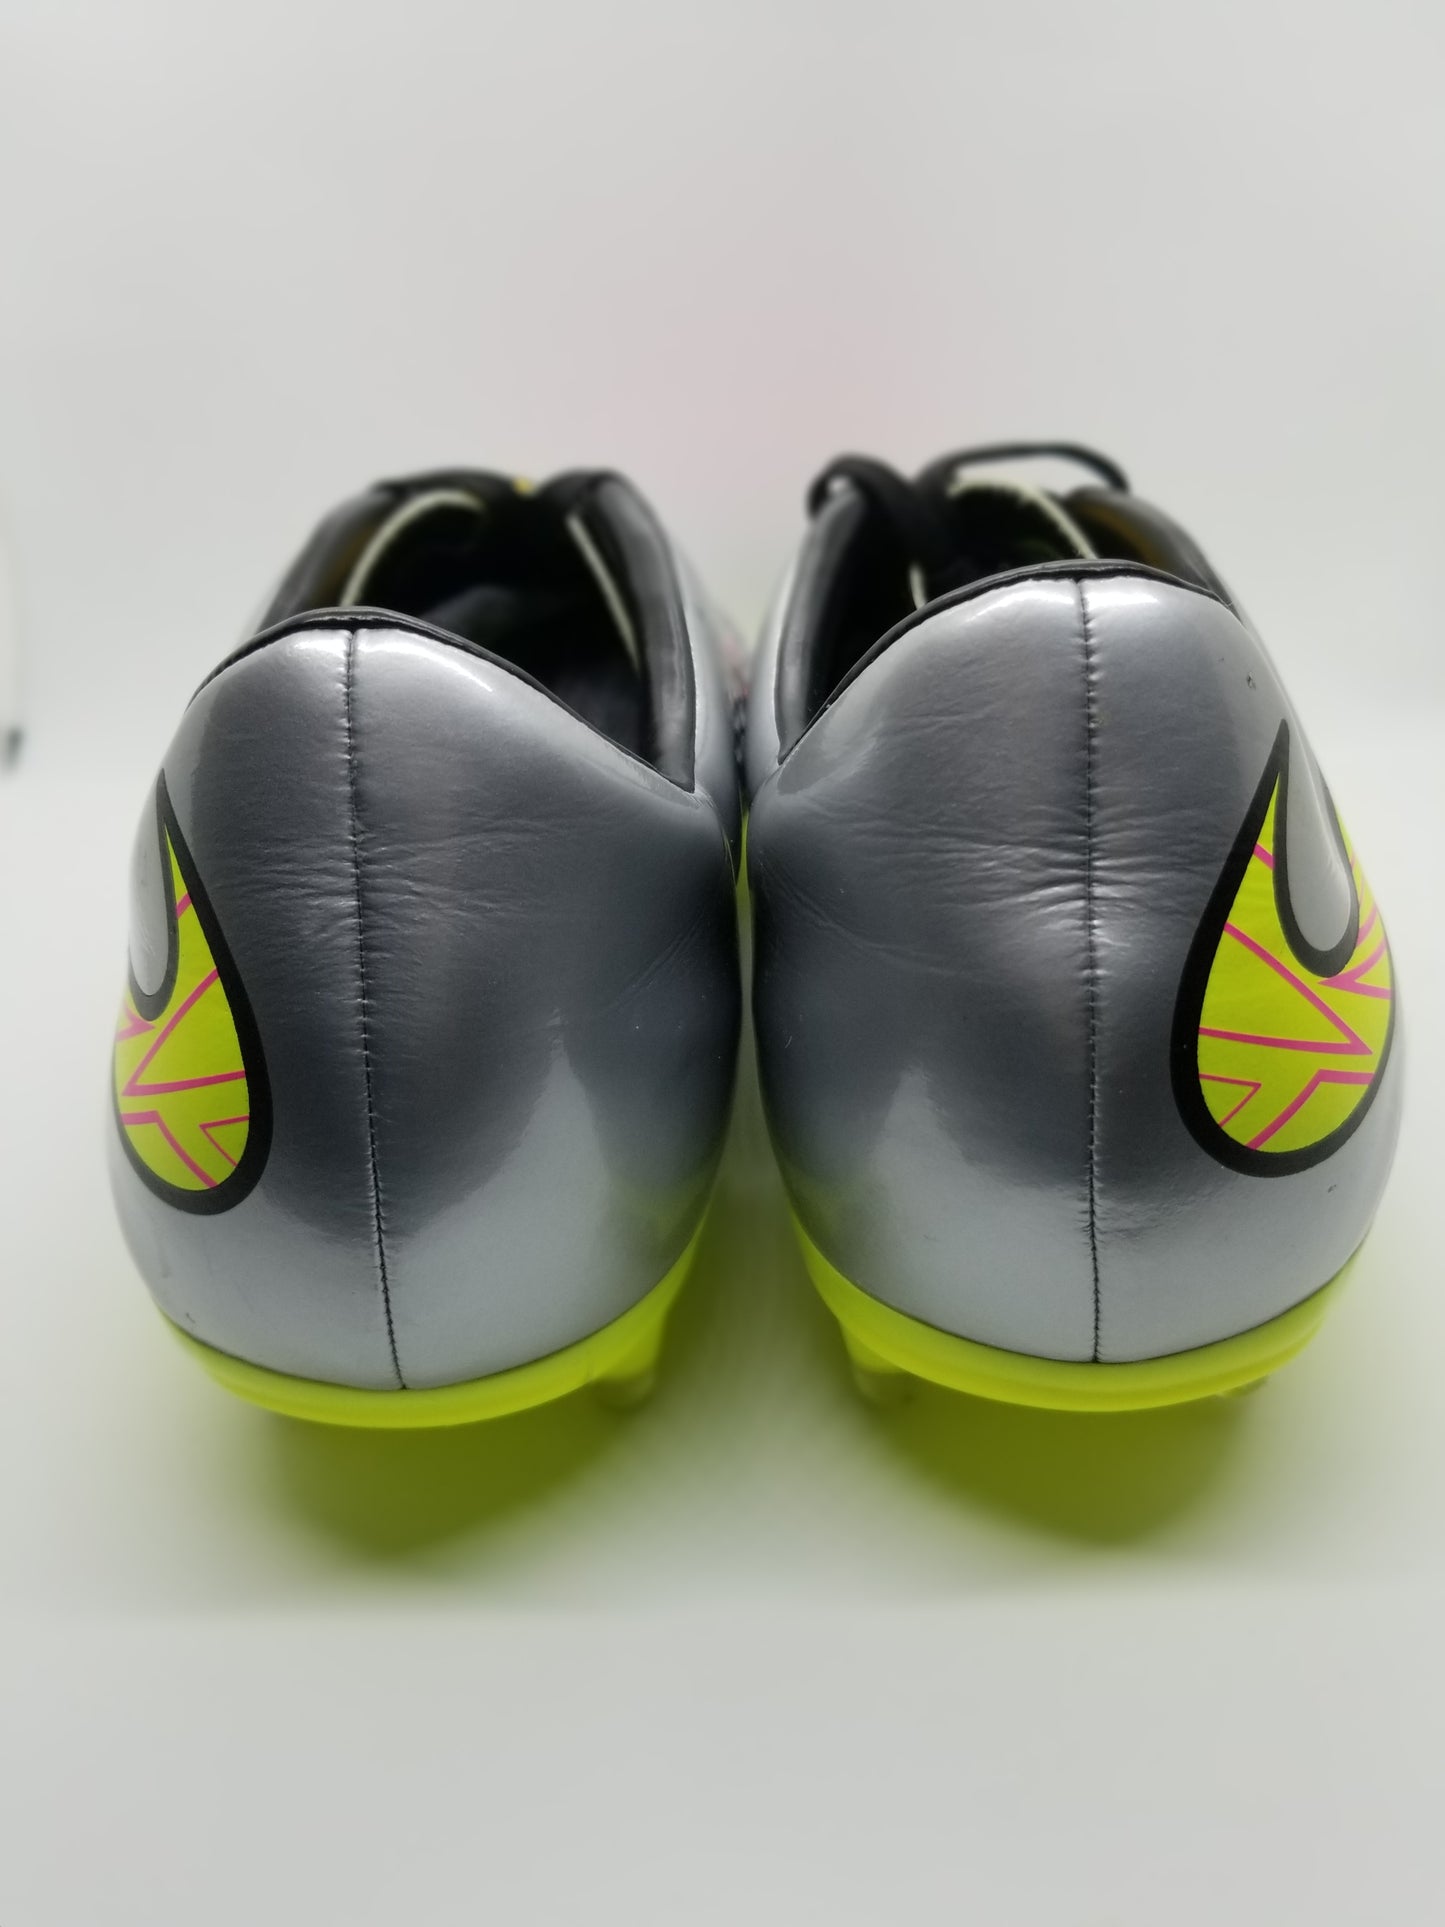 Nike Hypervenom Phatal Premier 'Liquid Dreams' FG